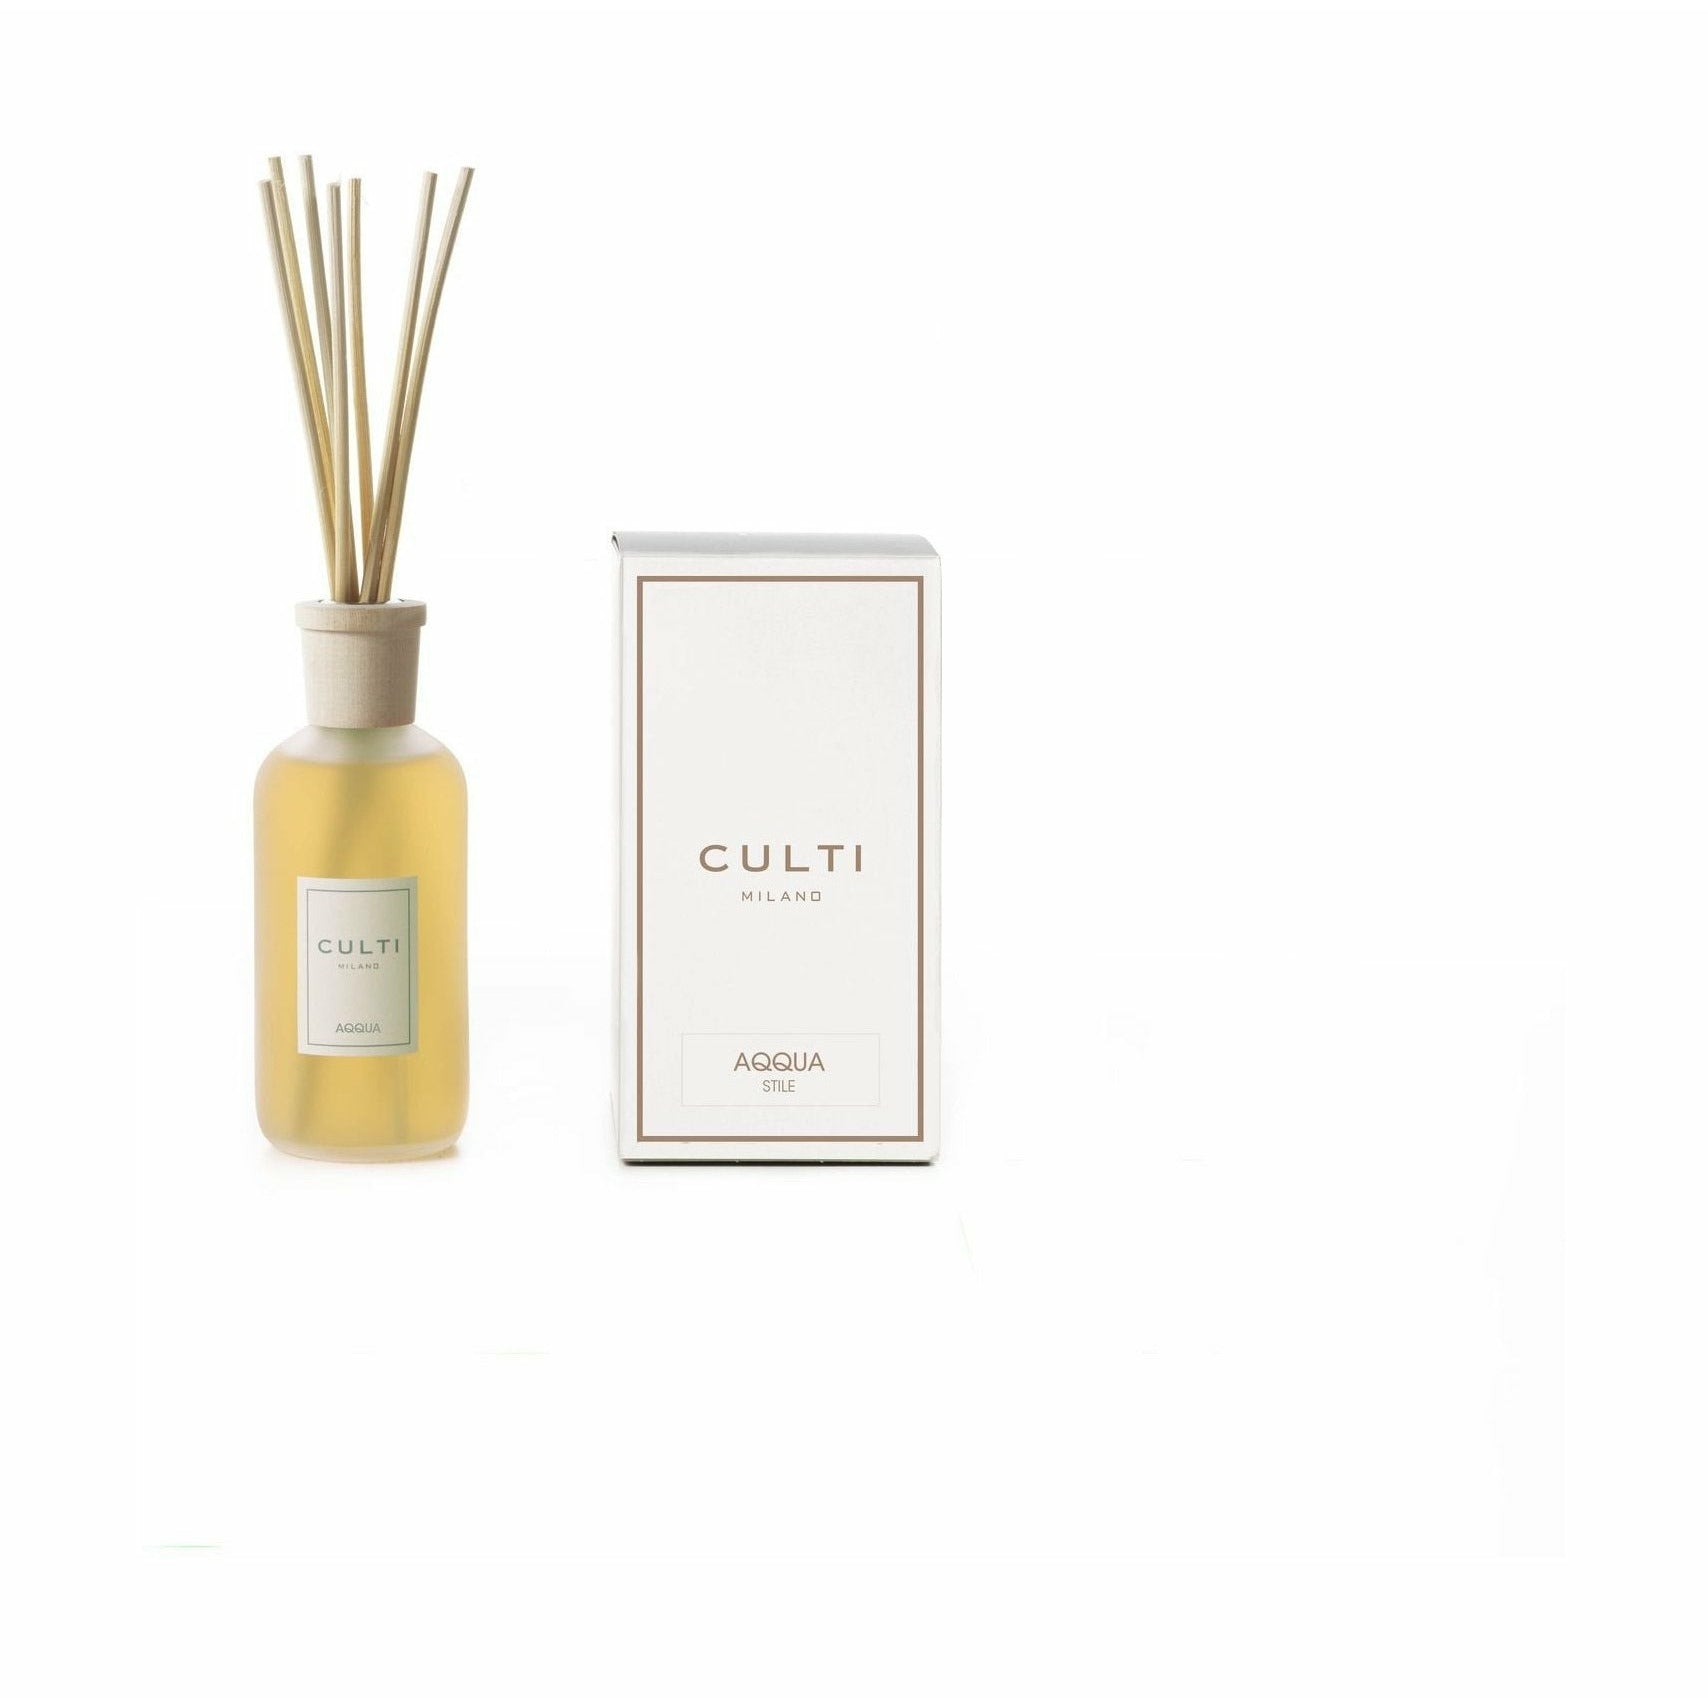 Culti Milano Stile Classic Fragrance Diffuser Aqqua, 250 Ml